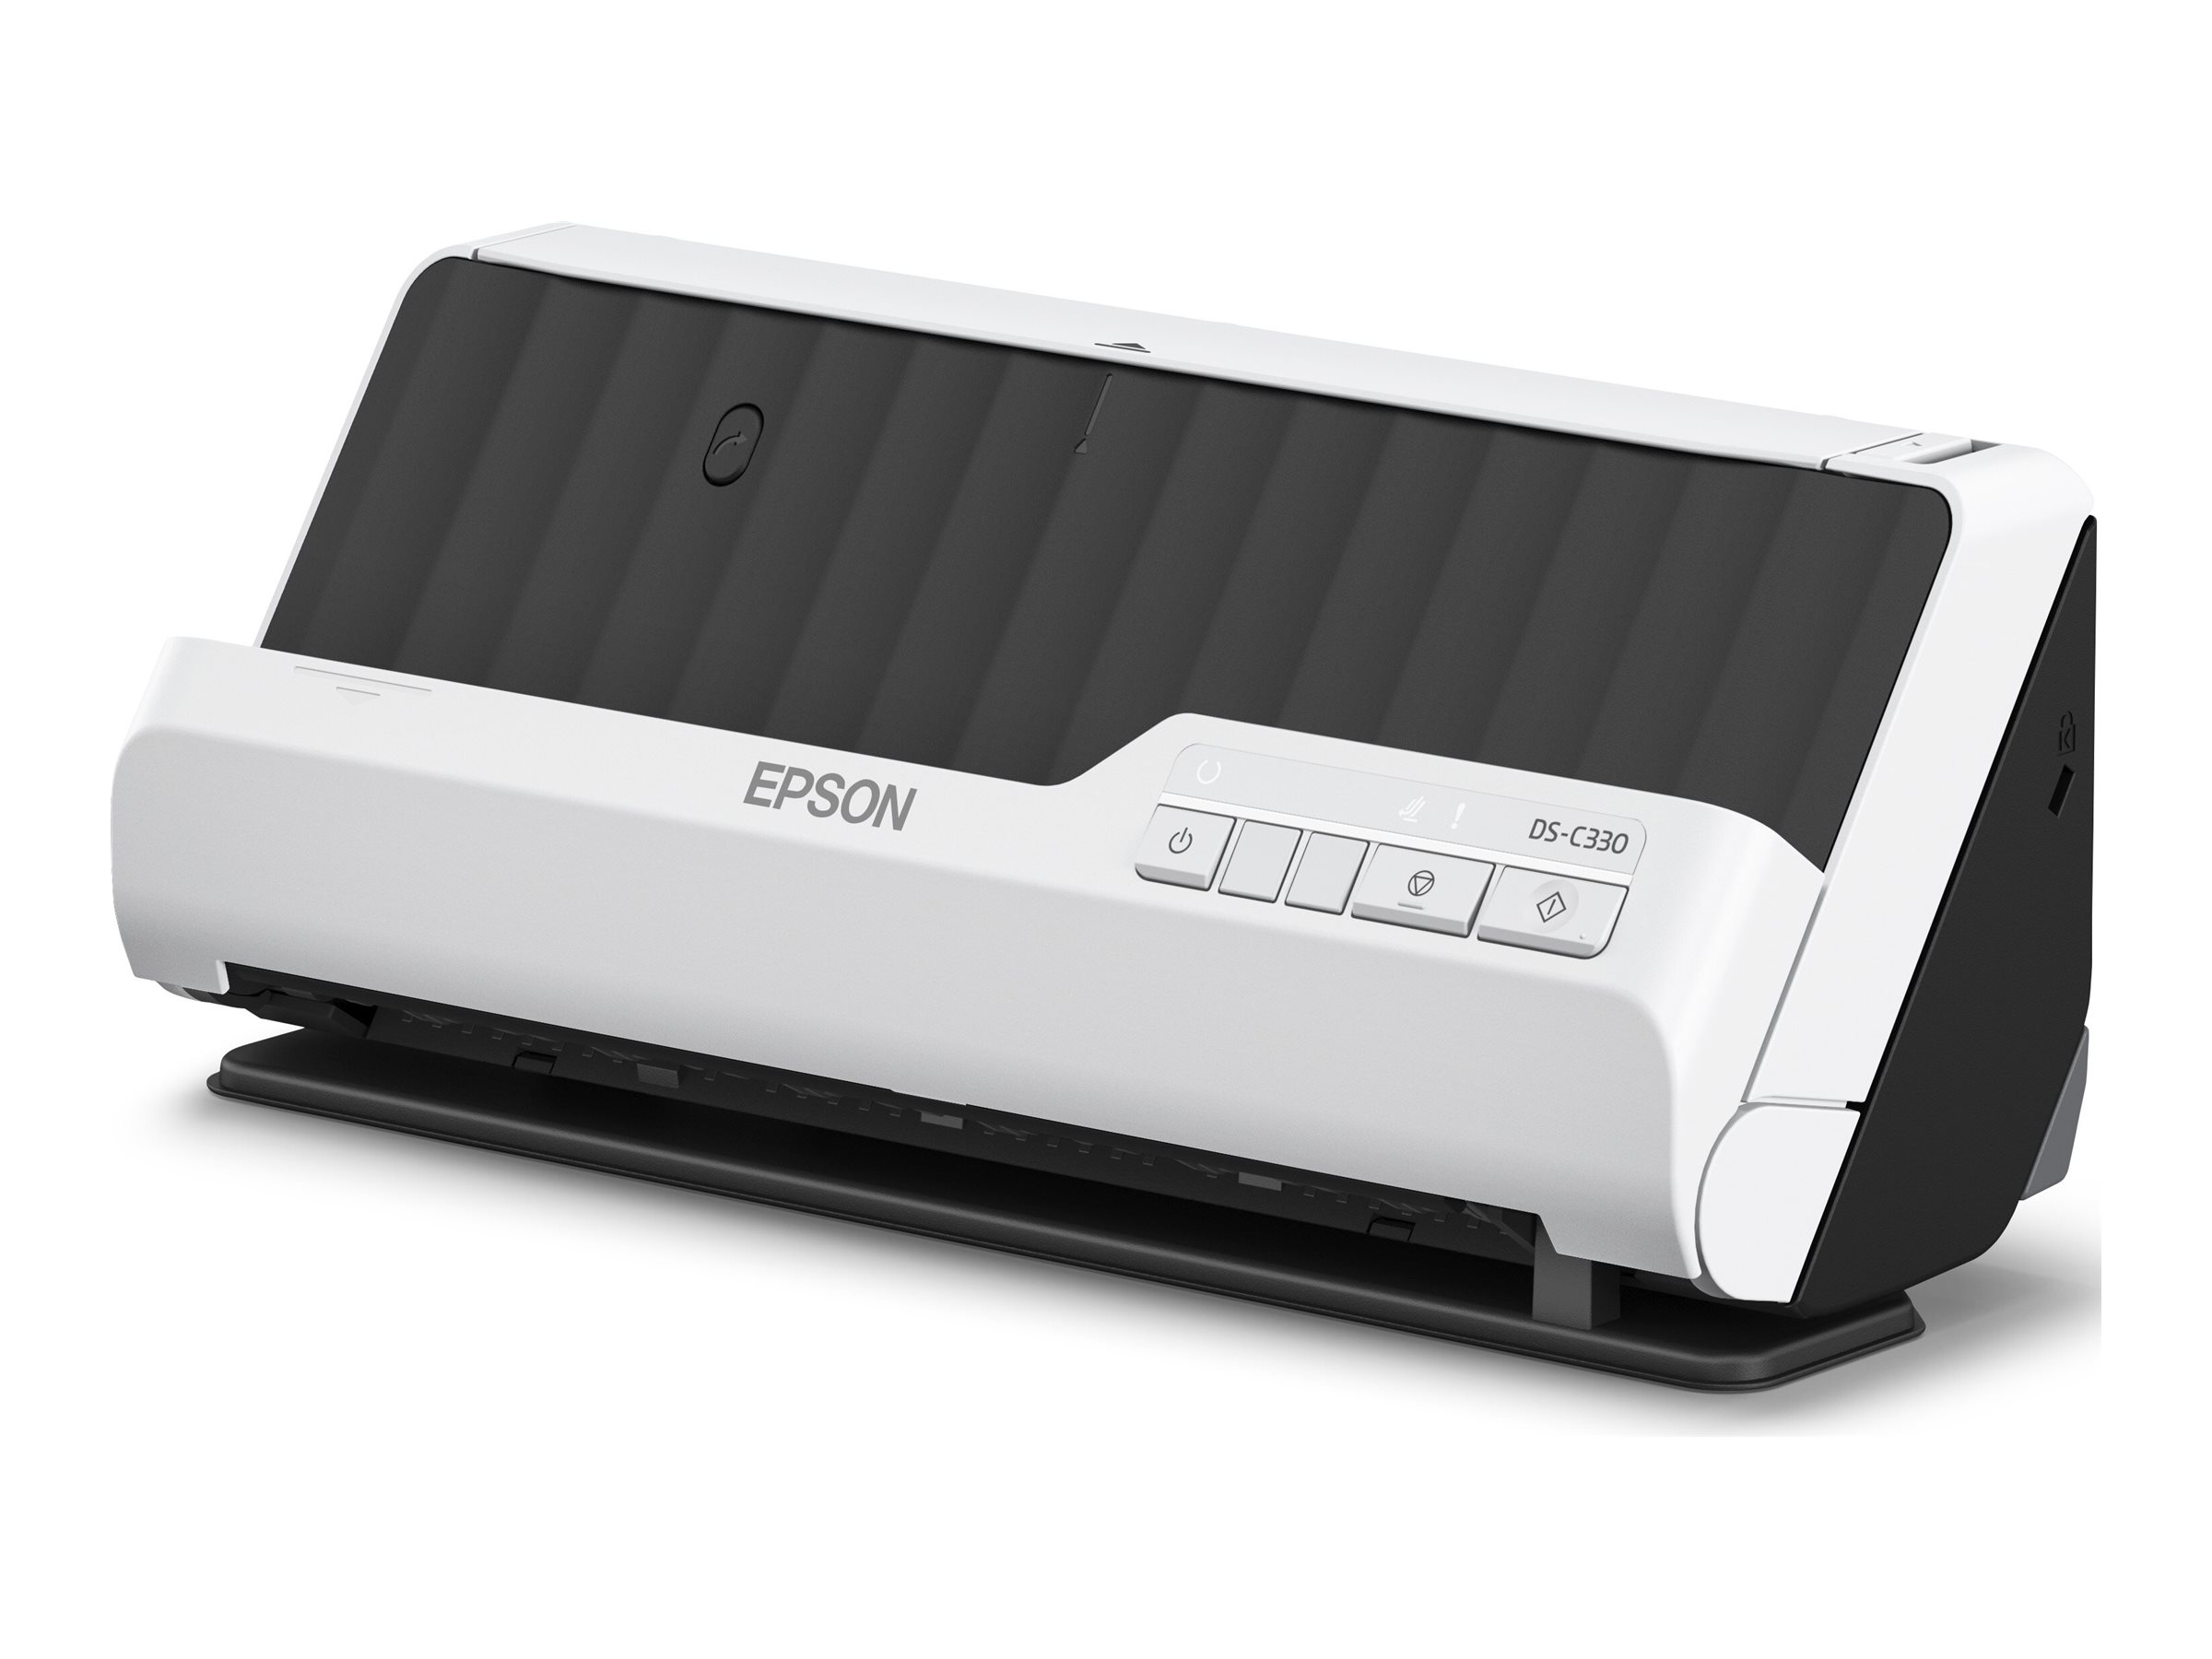 Epson DS-C330 - Einzelblatt-Scanner - Duplex - A4/Legal - 600 dpi x 600 dpi - automatischer Dokumenteneinzug (20 Seiten)